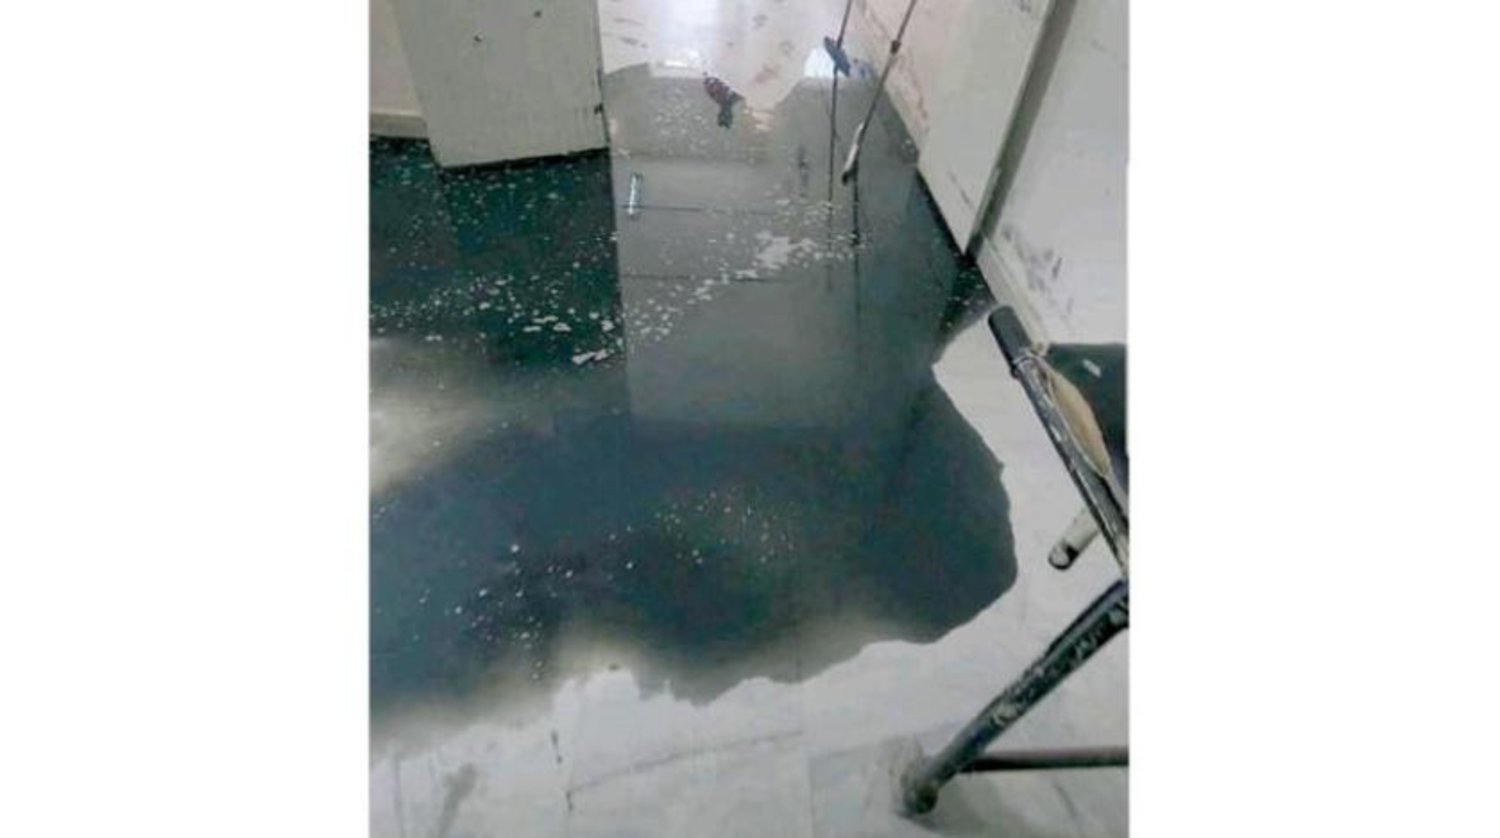 Sana'nın en büyük ikinci hastanesinde yaşanan kanalizasyon akıntısı sorunu (Şarku’l Avsat)